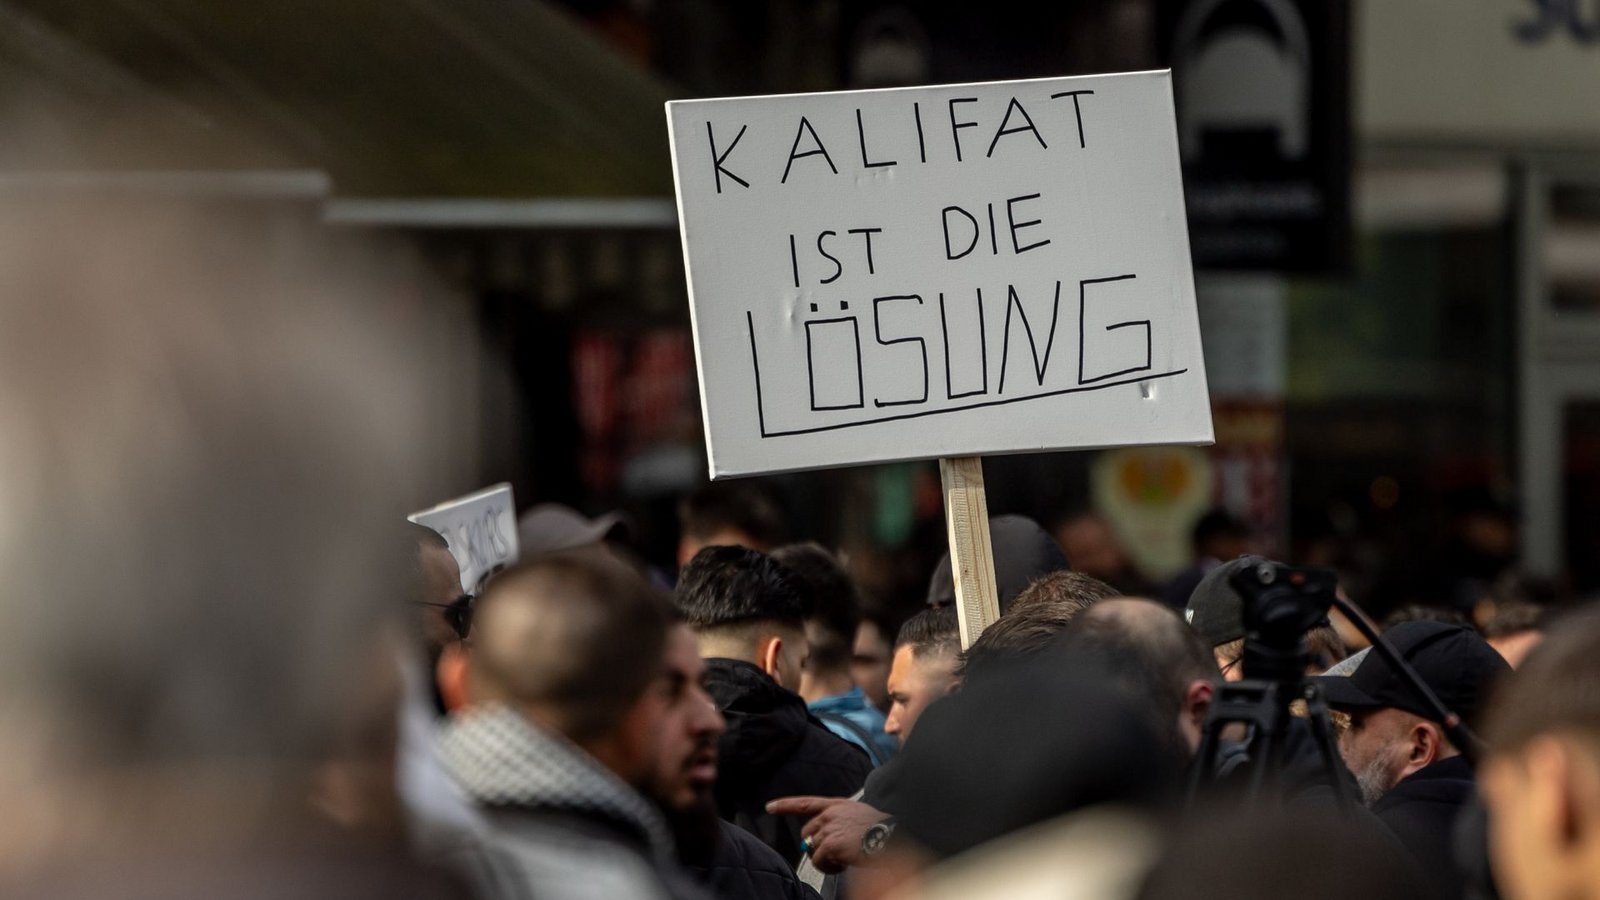 Solche und ähnliche Parolen waren auf der Demonstration zu sehen.Foto: dpa/Axel Heimken